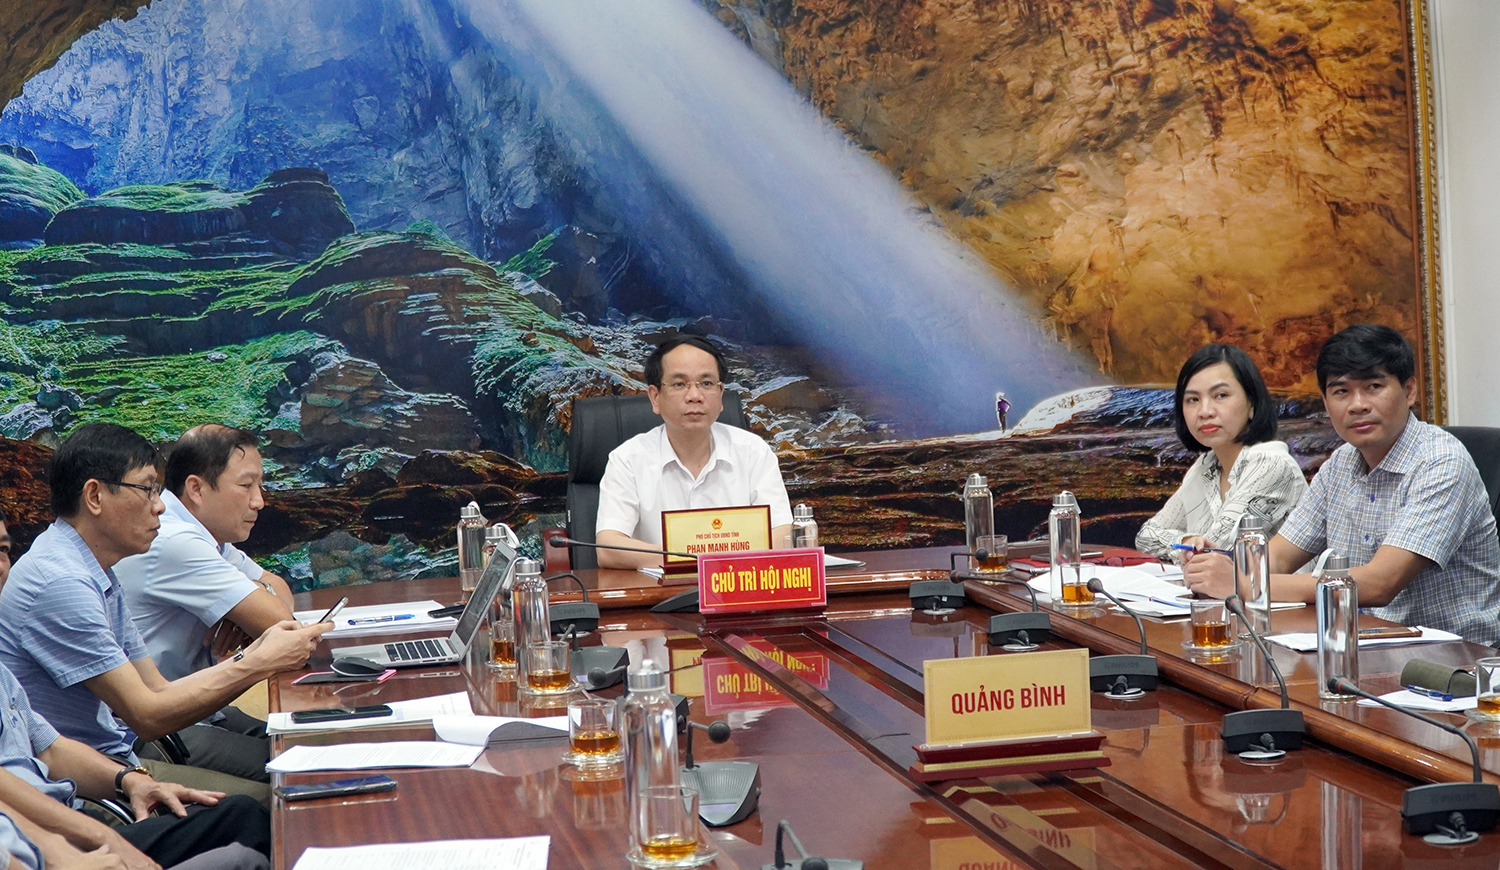 Đồng chí Phó Chủ tịch UBND tỉnh Phan Mạnh Hùng điều hành hội nghị tại điểm cầu Quảng Bình